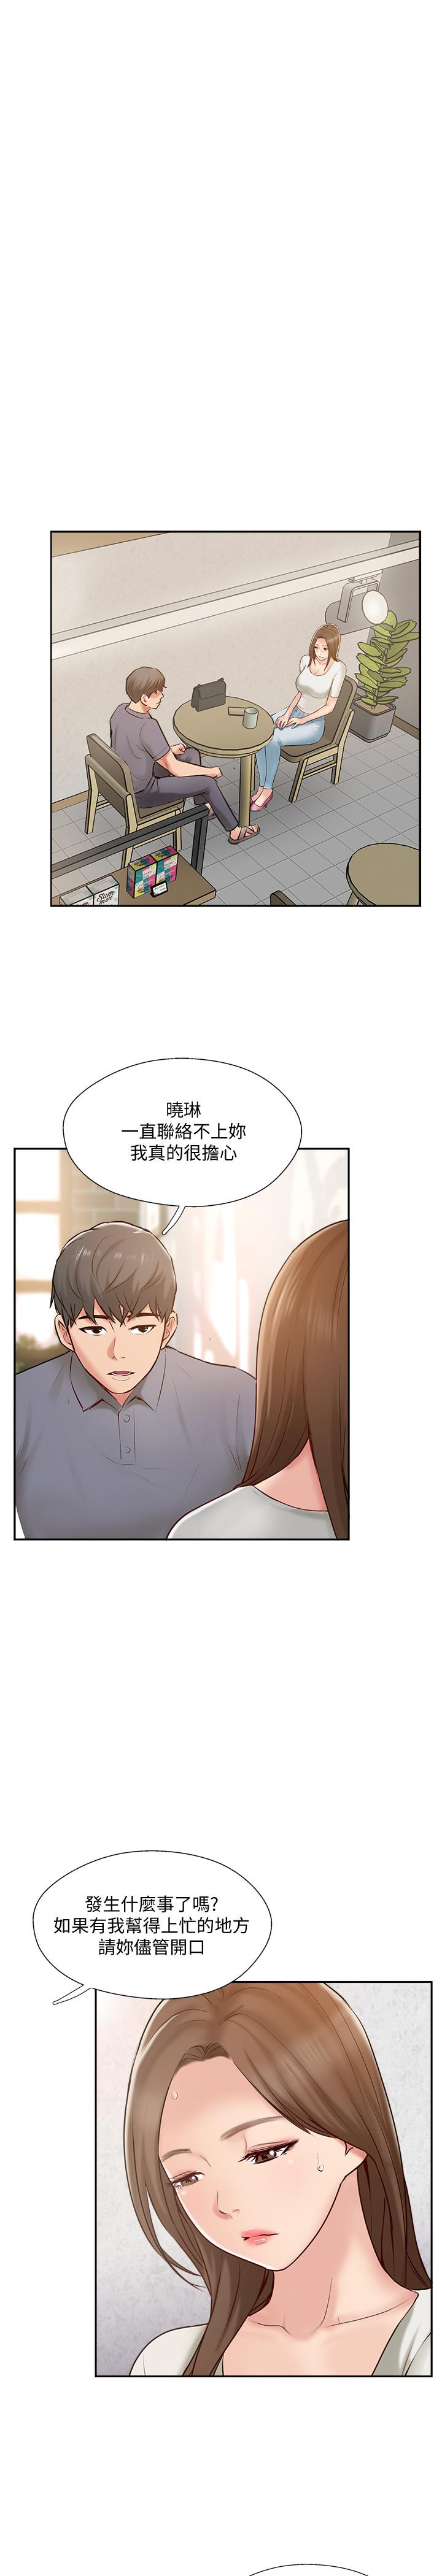 韩国污漫画 完美新伴侶 第44话-老公已经满足不了我 1